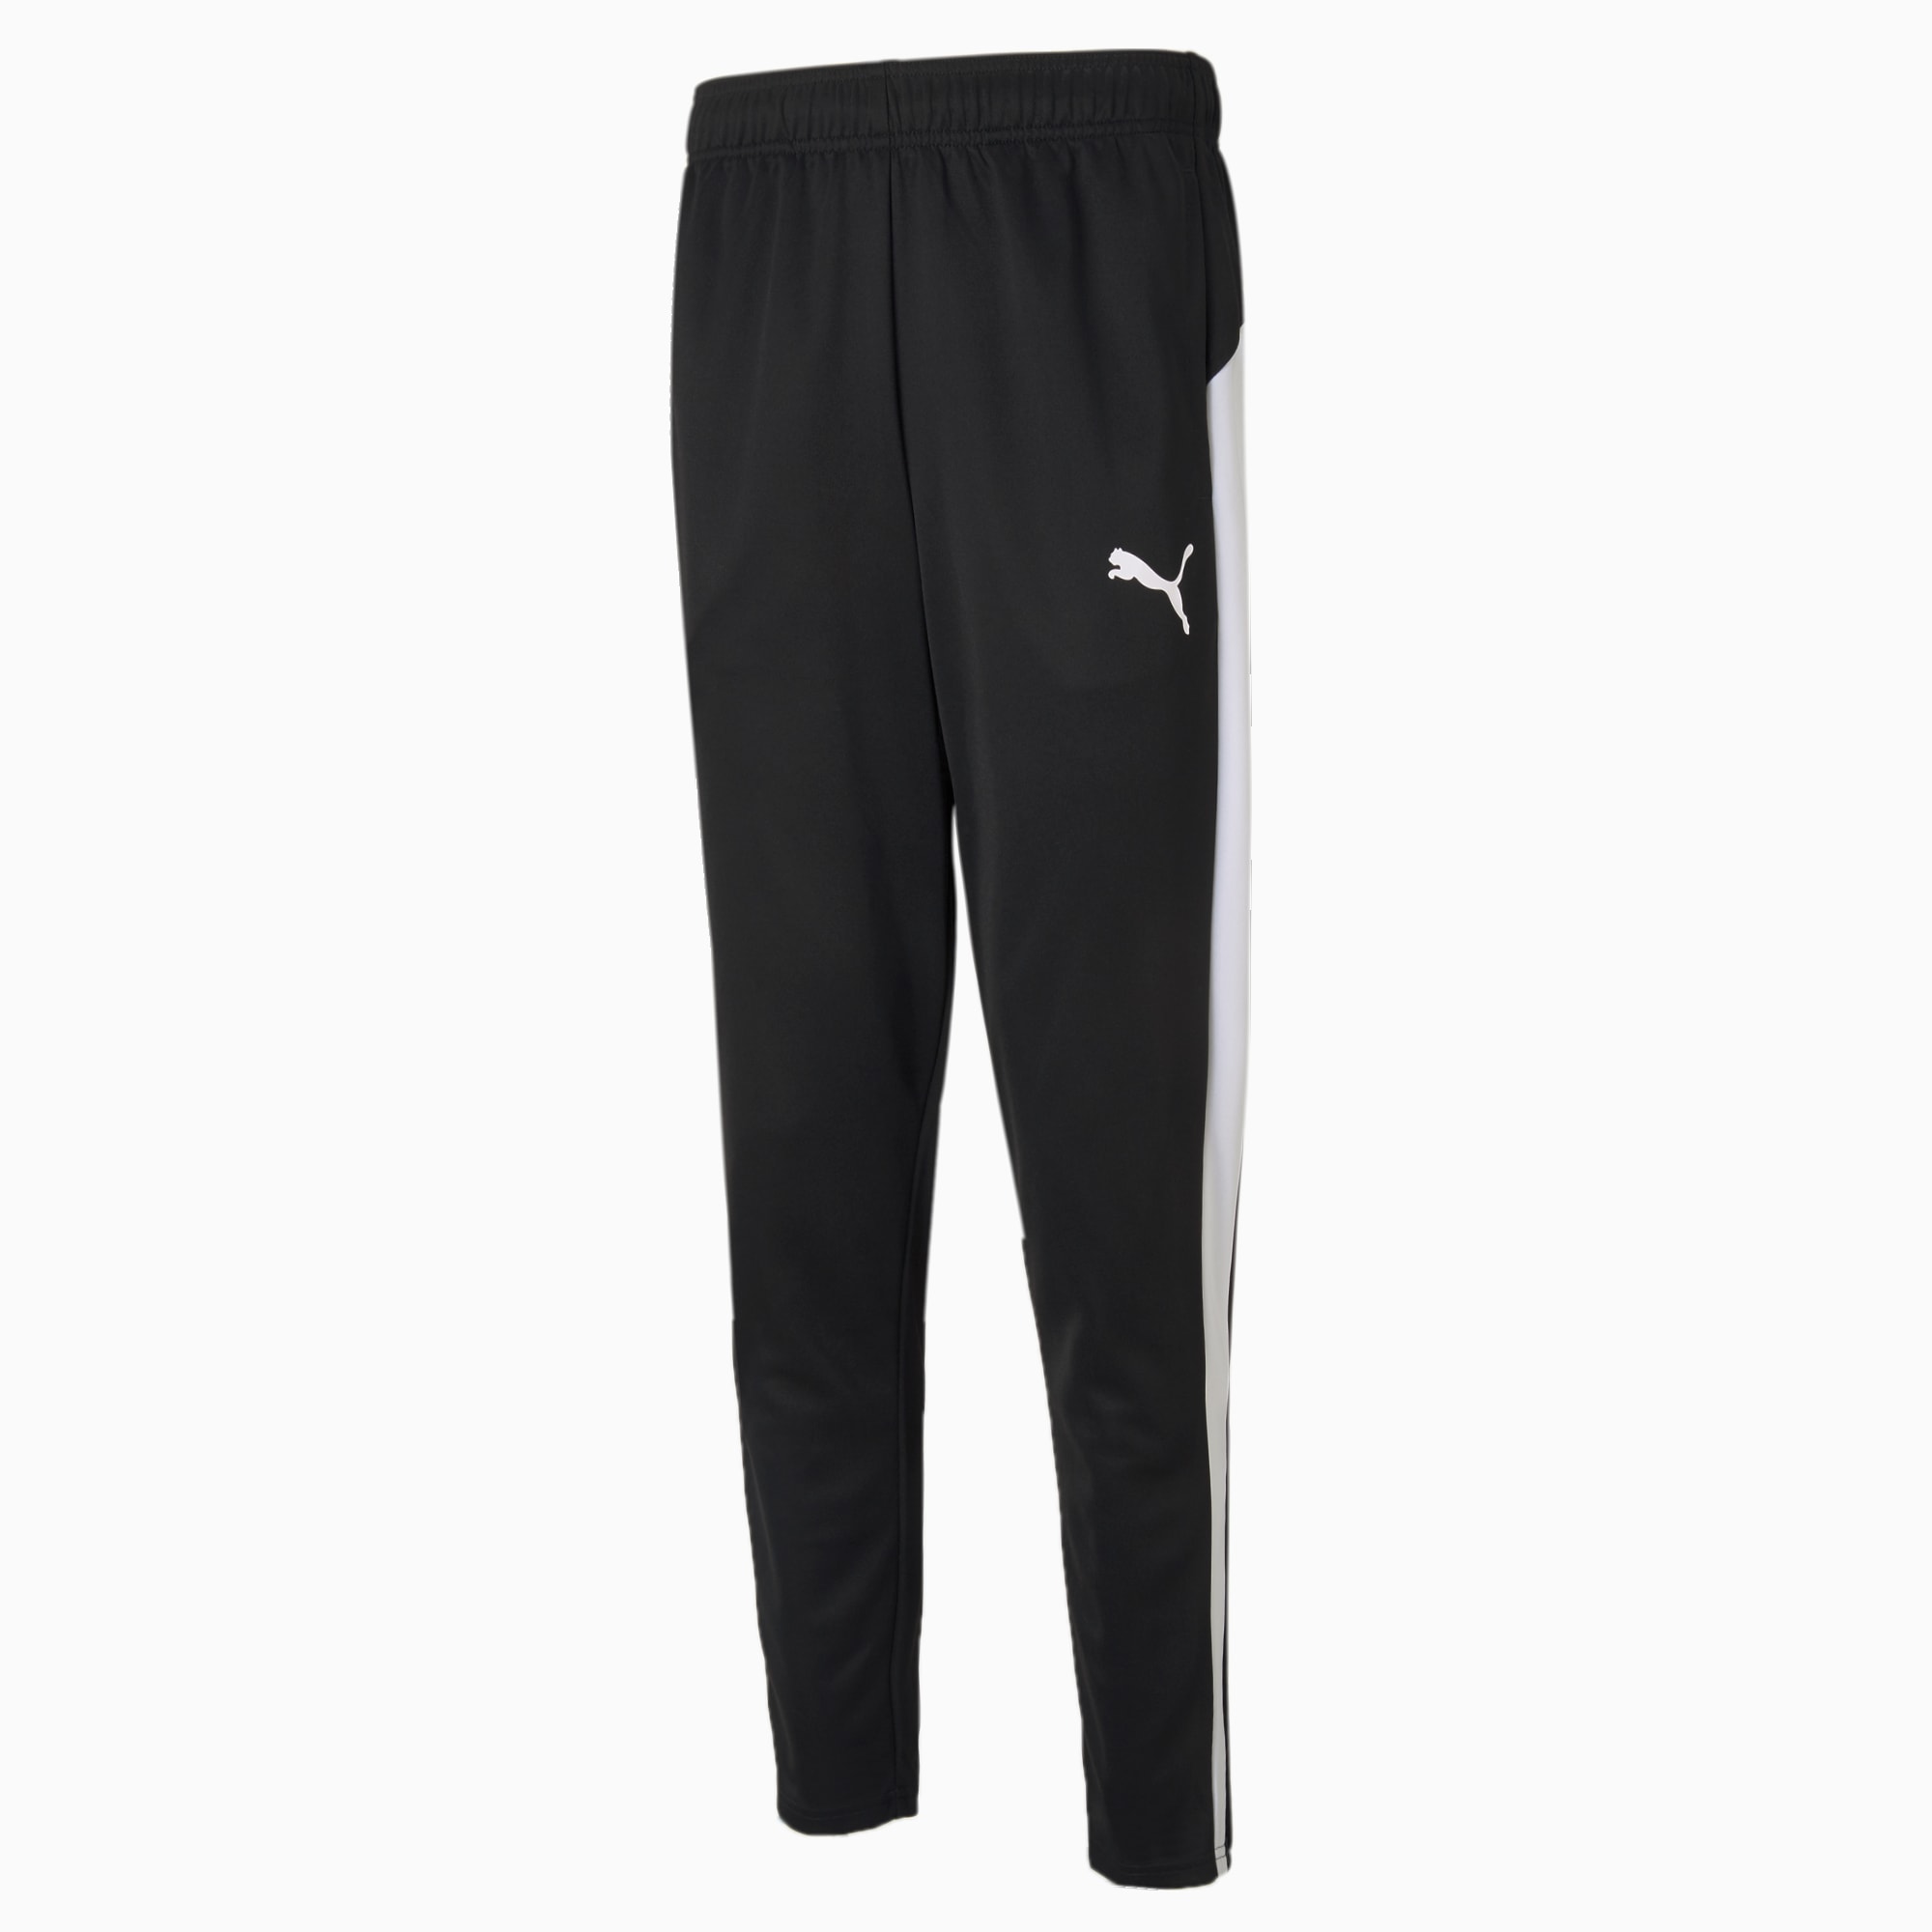 PUMA Active Tricot Men's Sweatpants, Black/White, Size XXL, Clothing